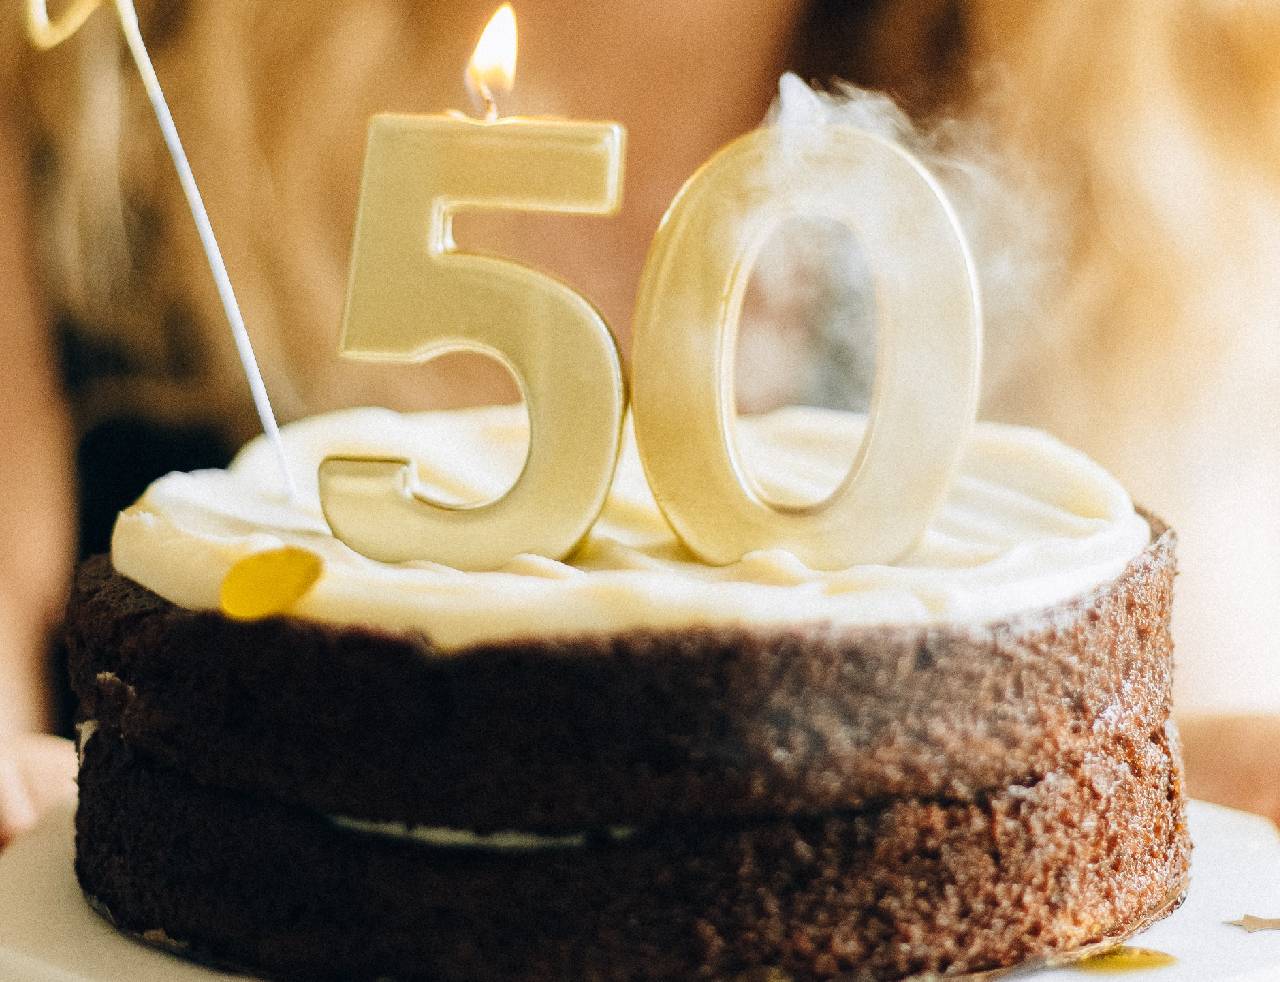 50 anni compleanno? Festeggia un compleanno 50 anni speciale